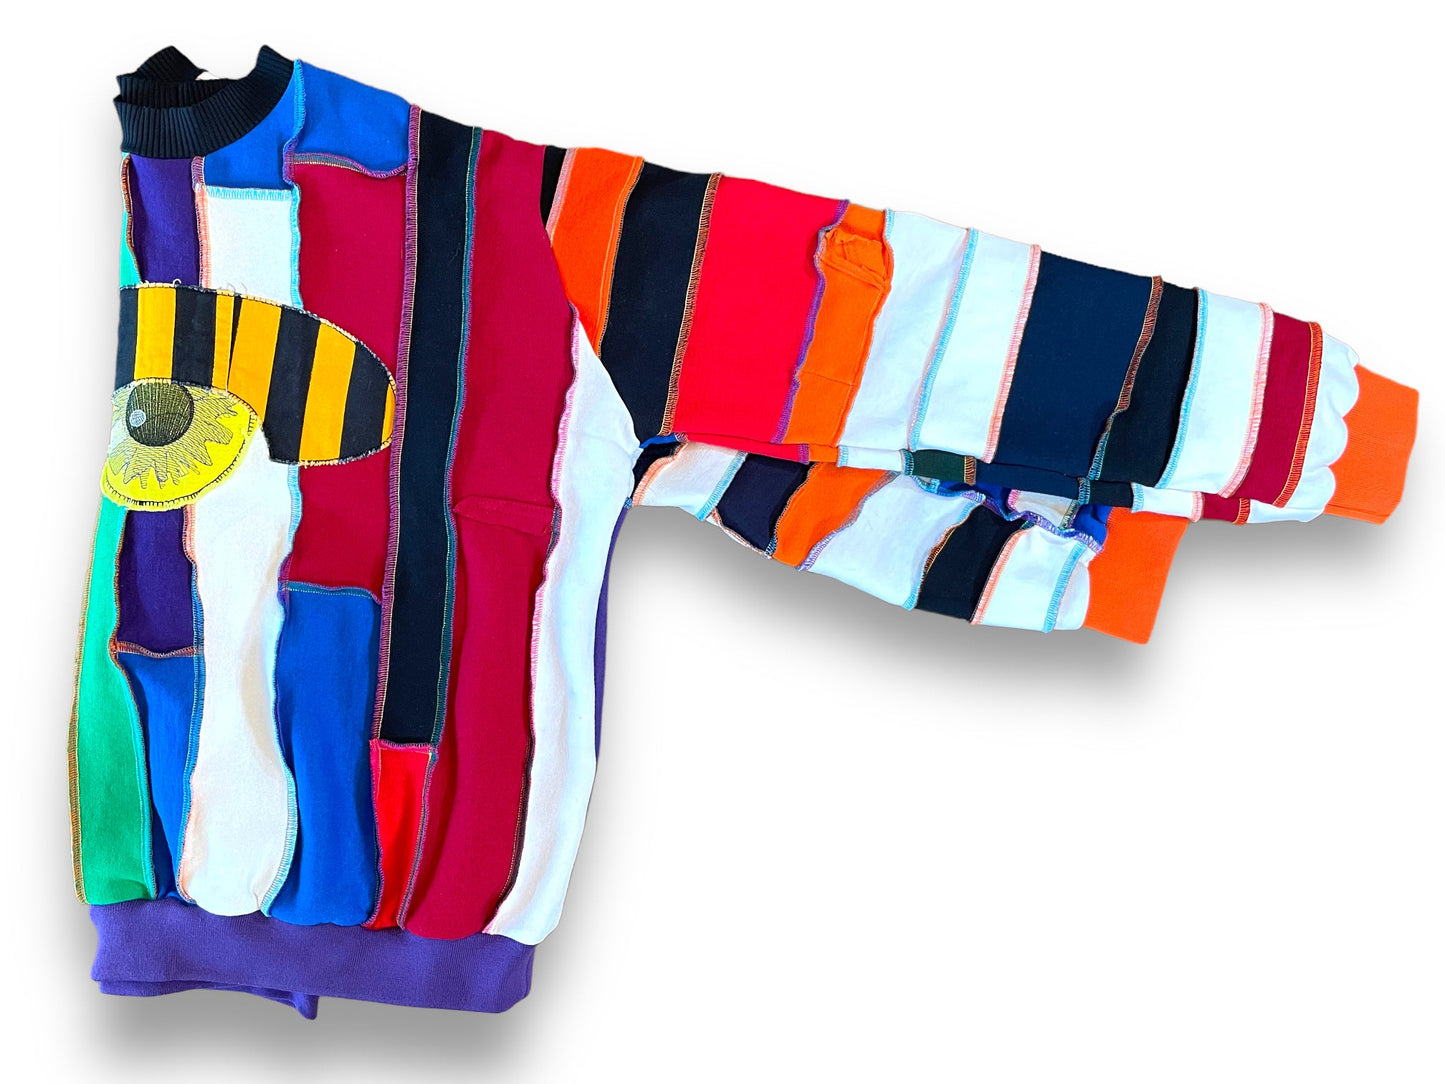 FRANKIE 2.0 | Upcycled Swearshirt, Size XL